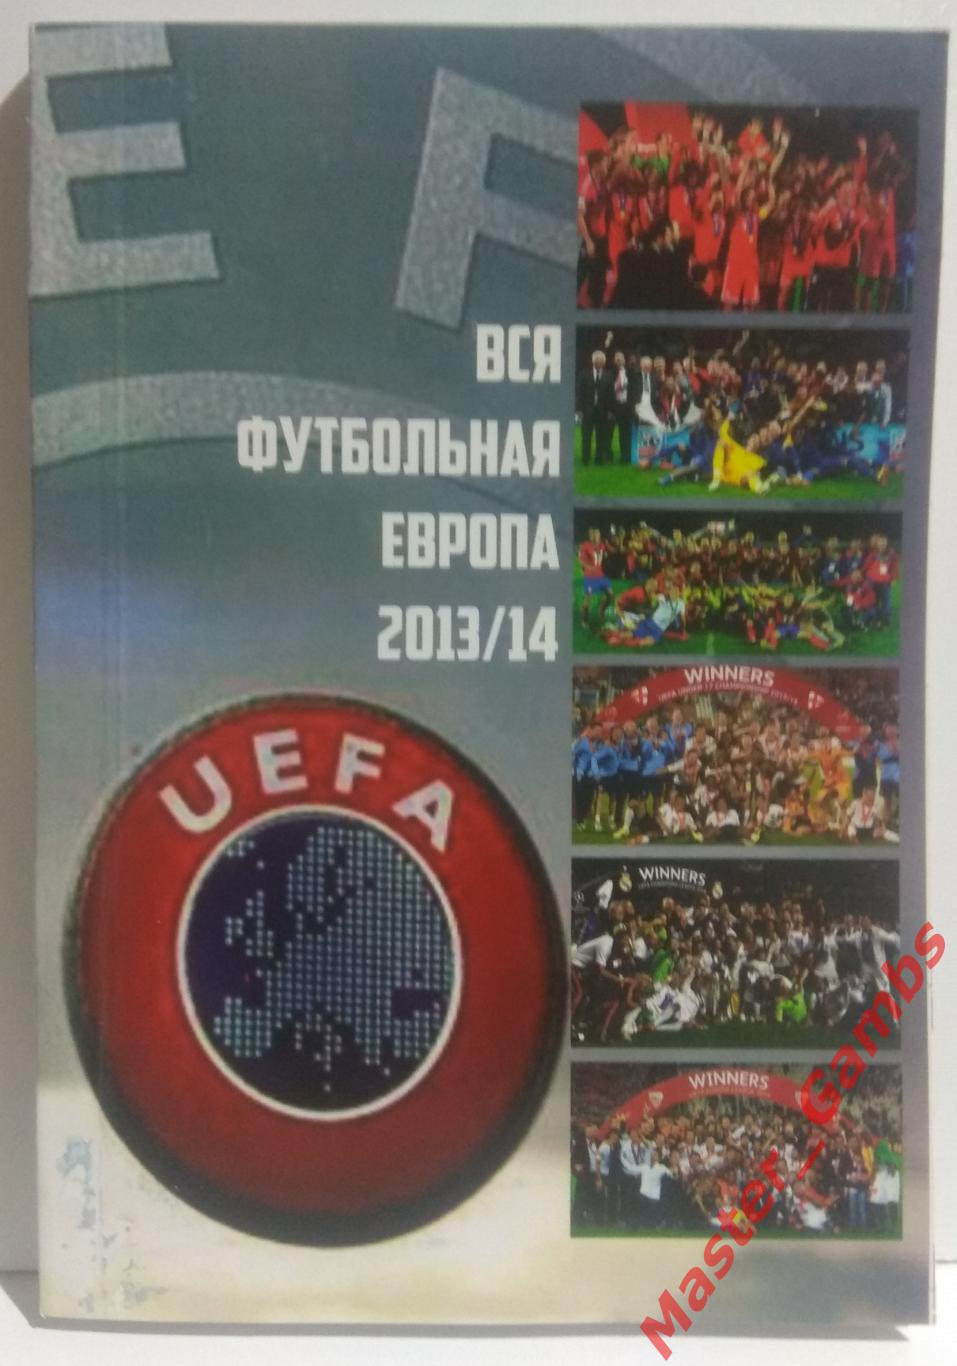 Ландер - Футбол в Украине #23 / Вся футбольная Европа #4 2013/2014* 1